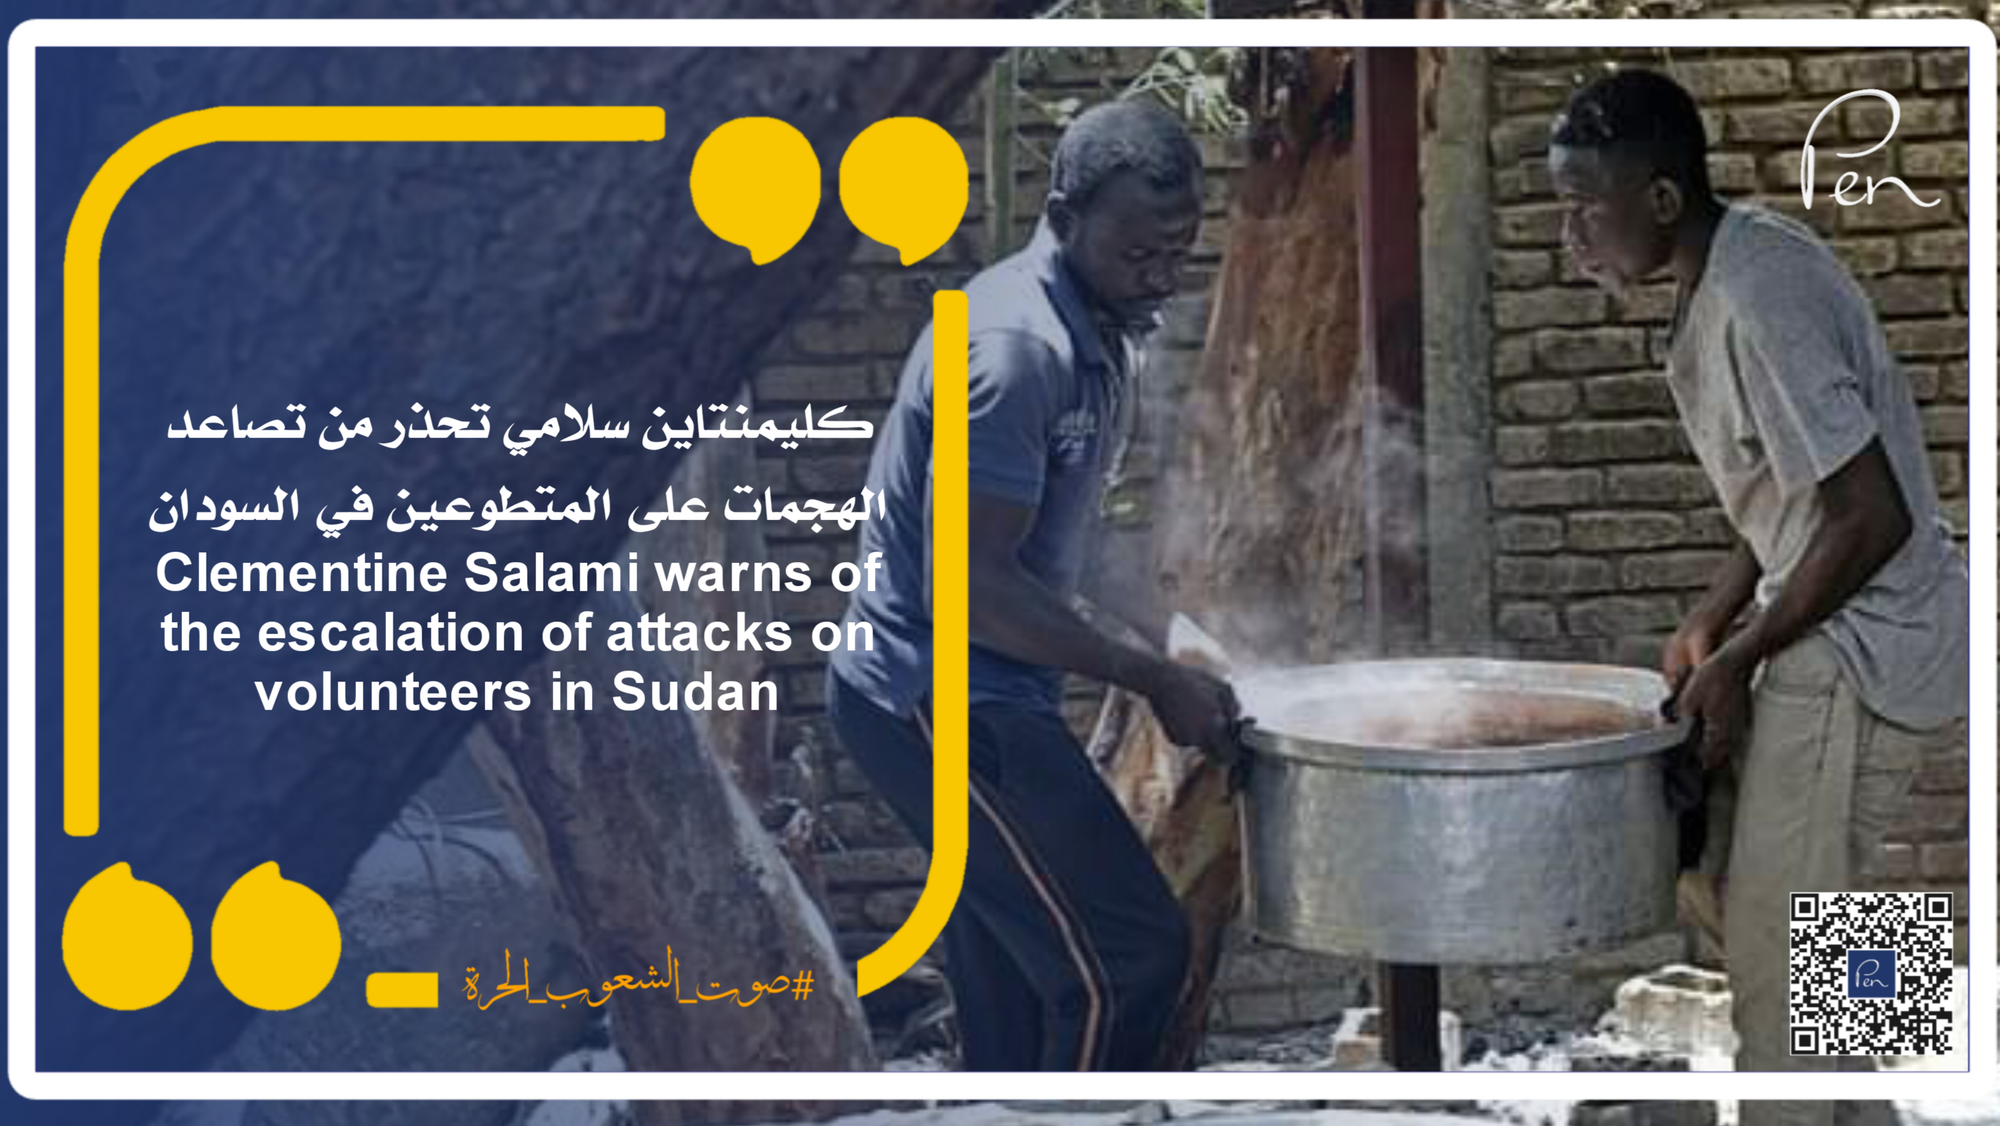 كليمنتاين سلامي تحذر من تصاعد الهجمات على المتطوعين في السودان